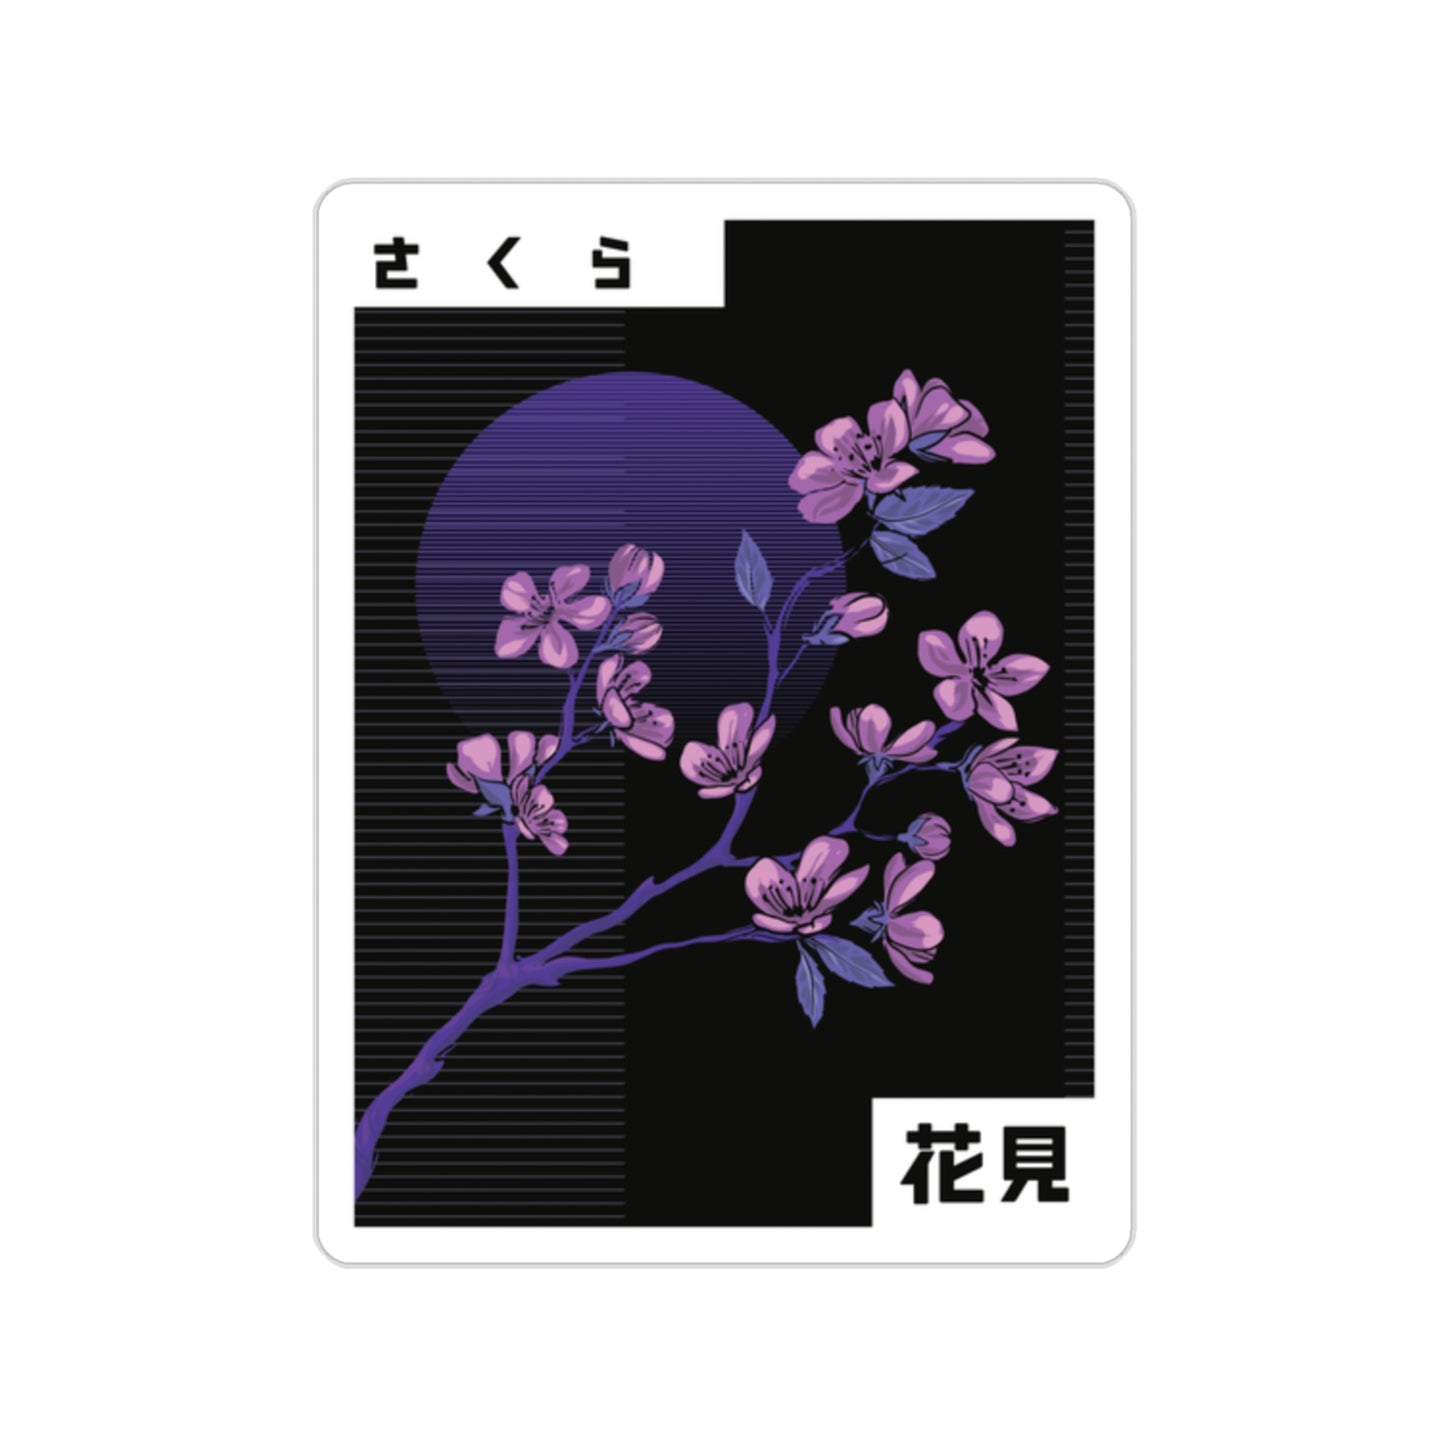 Indie Japanese Art Flower Blossom Graphic Sticker